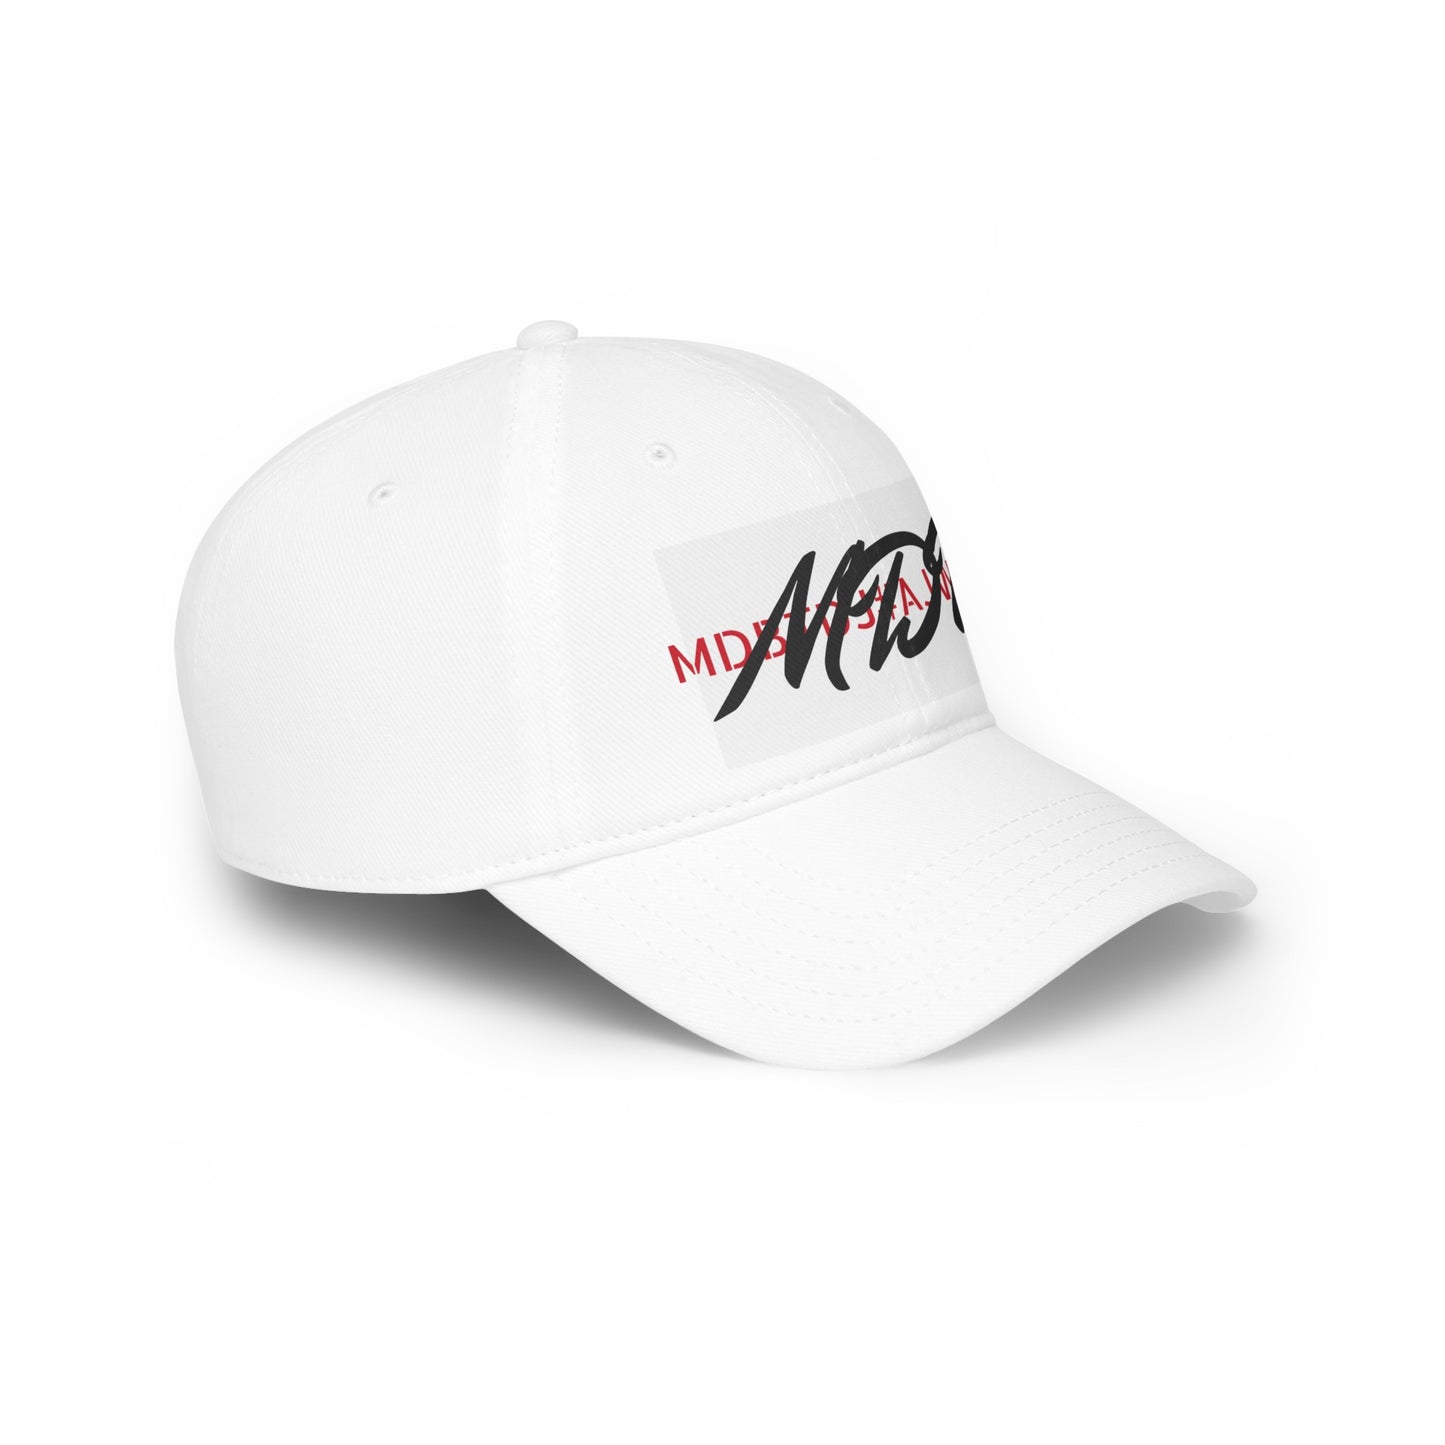 MDBTDJ#AJWBRC - Low Profile Baseball Cap Tattooed Dj's Limited Edition, Hats, Tattooed Djs Shop